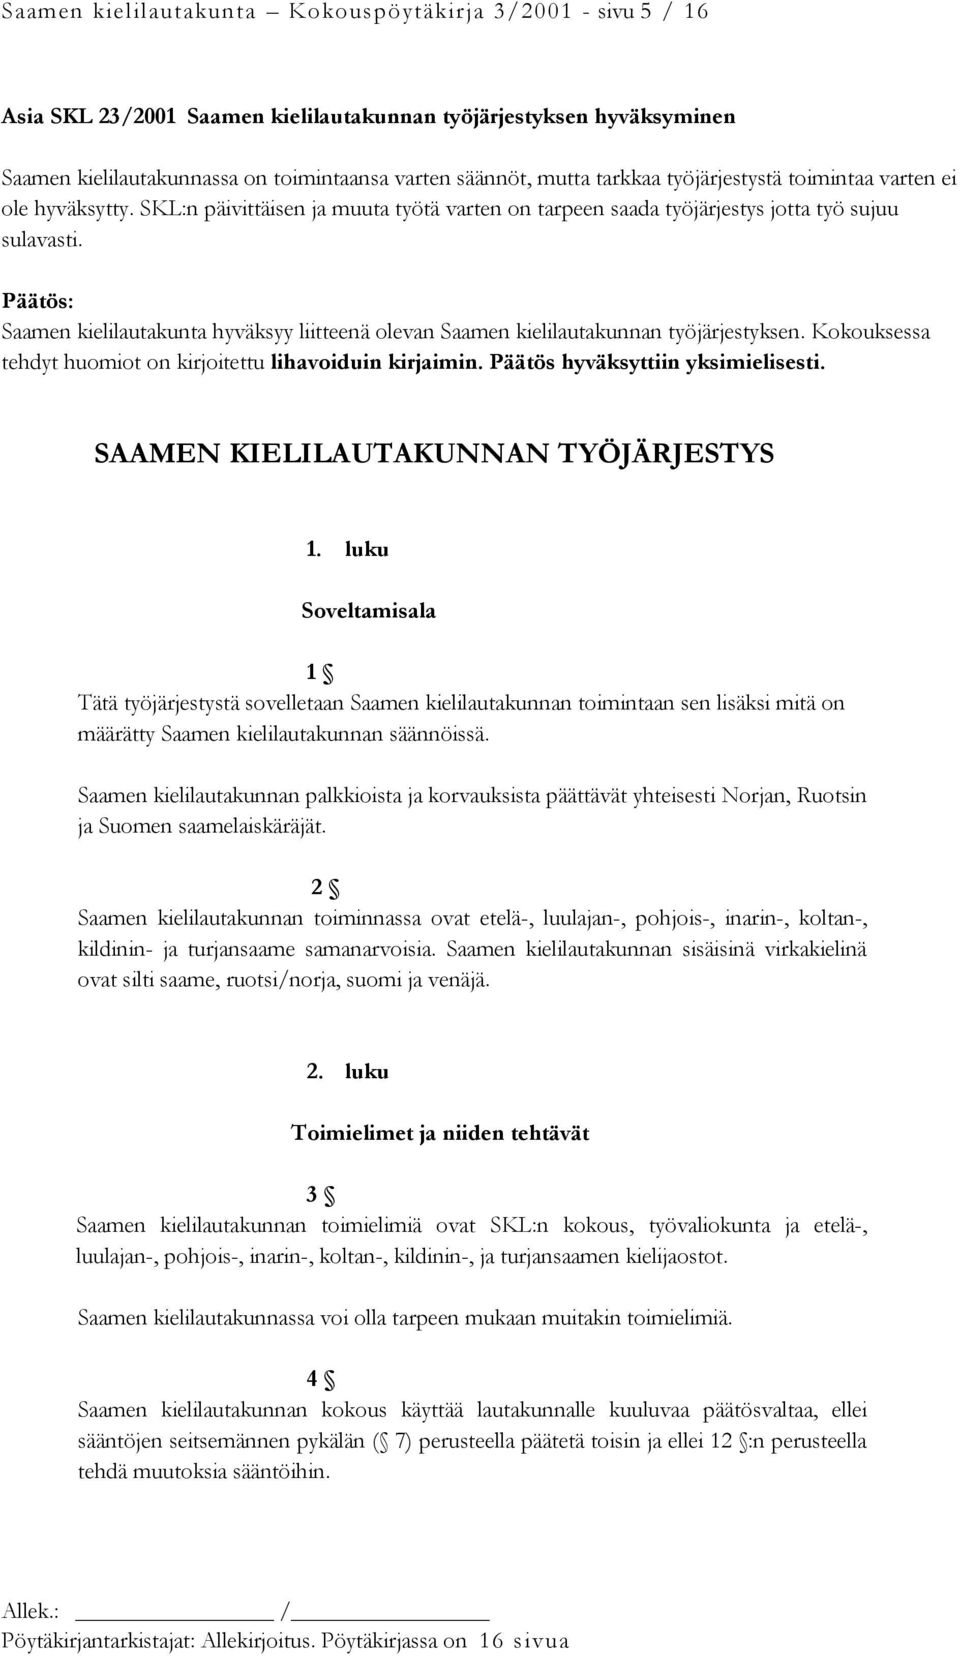 Päätös: Saamen kielilautakunta hyväksyy liitteenä olevan Saamen kielilautakunnan työjärjestyksen. Kokouksessa tehdyt huomiot on kirjoitettu lihavoiduin kirjaimin. Päätös hyväksyttiin yksimielisesti.